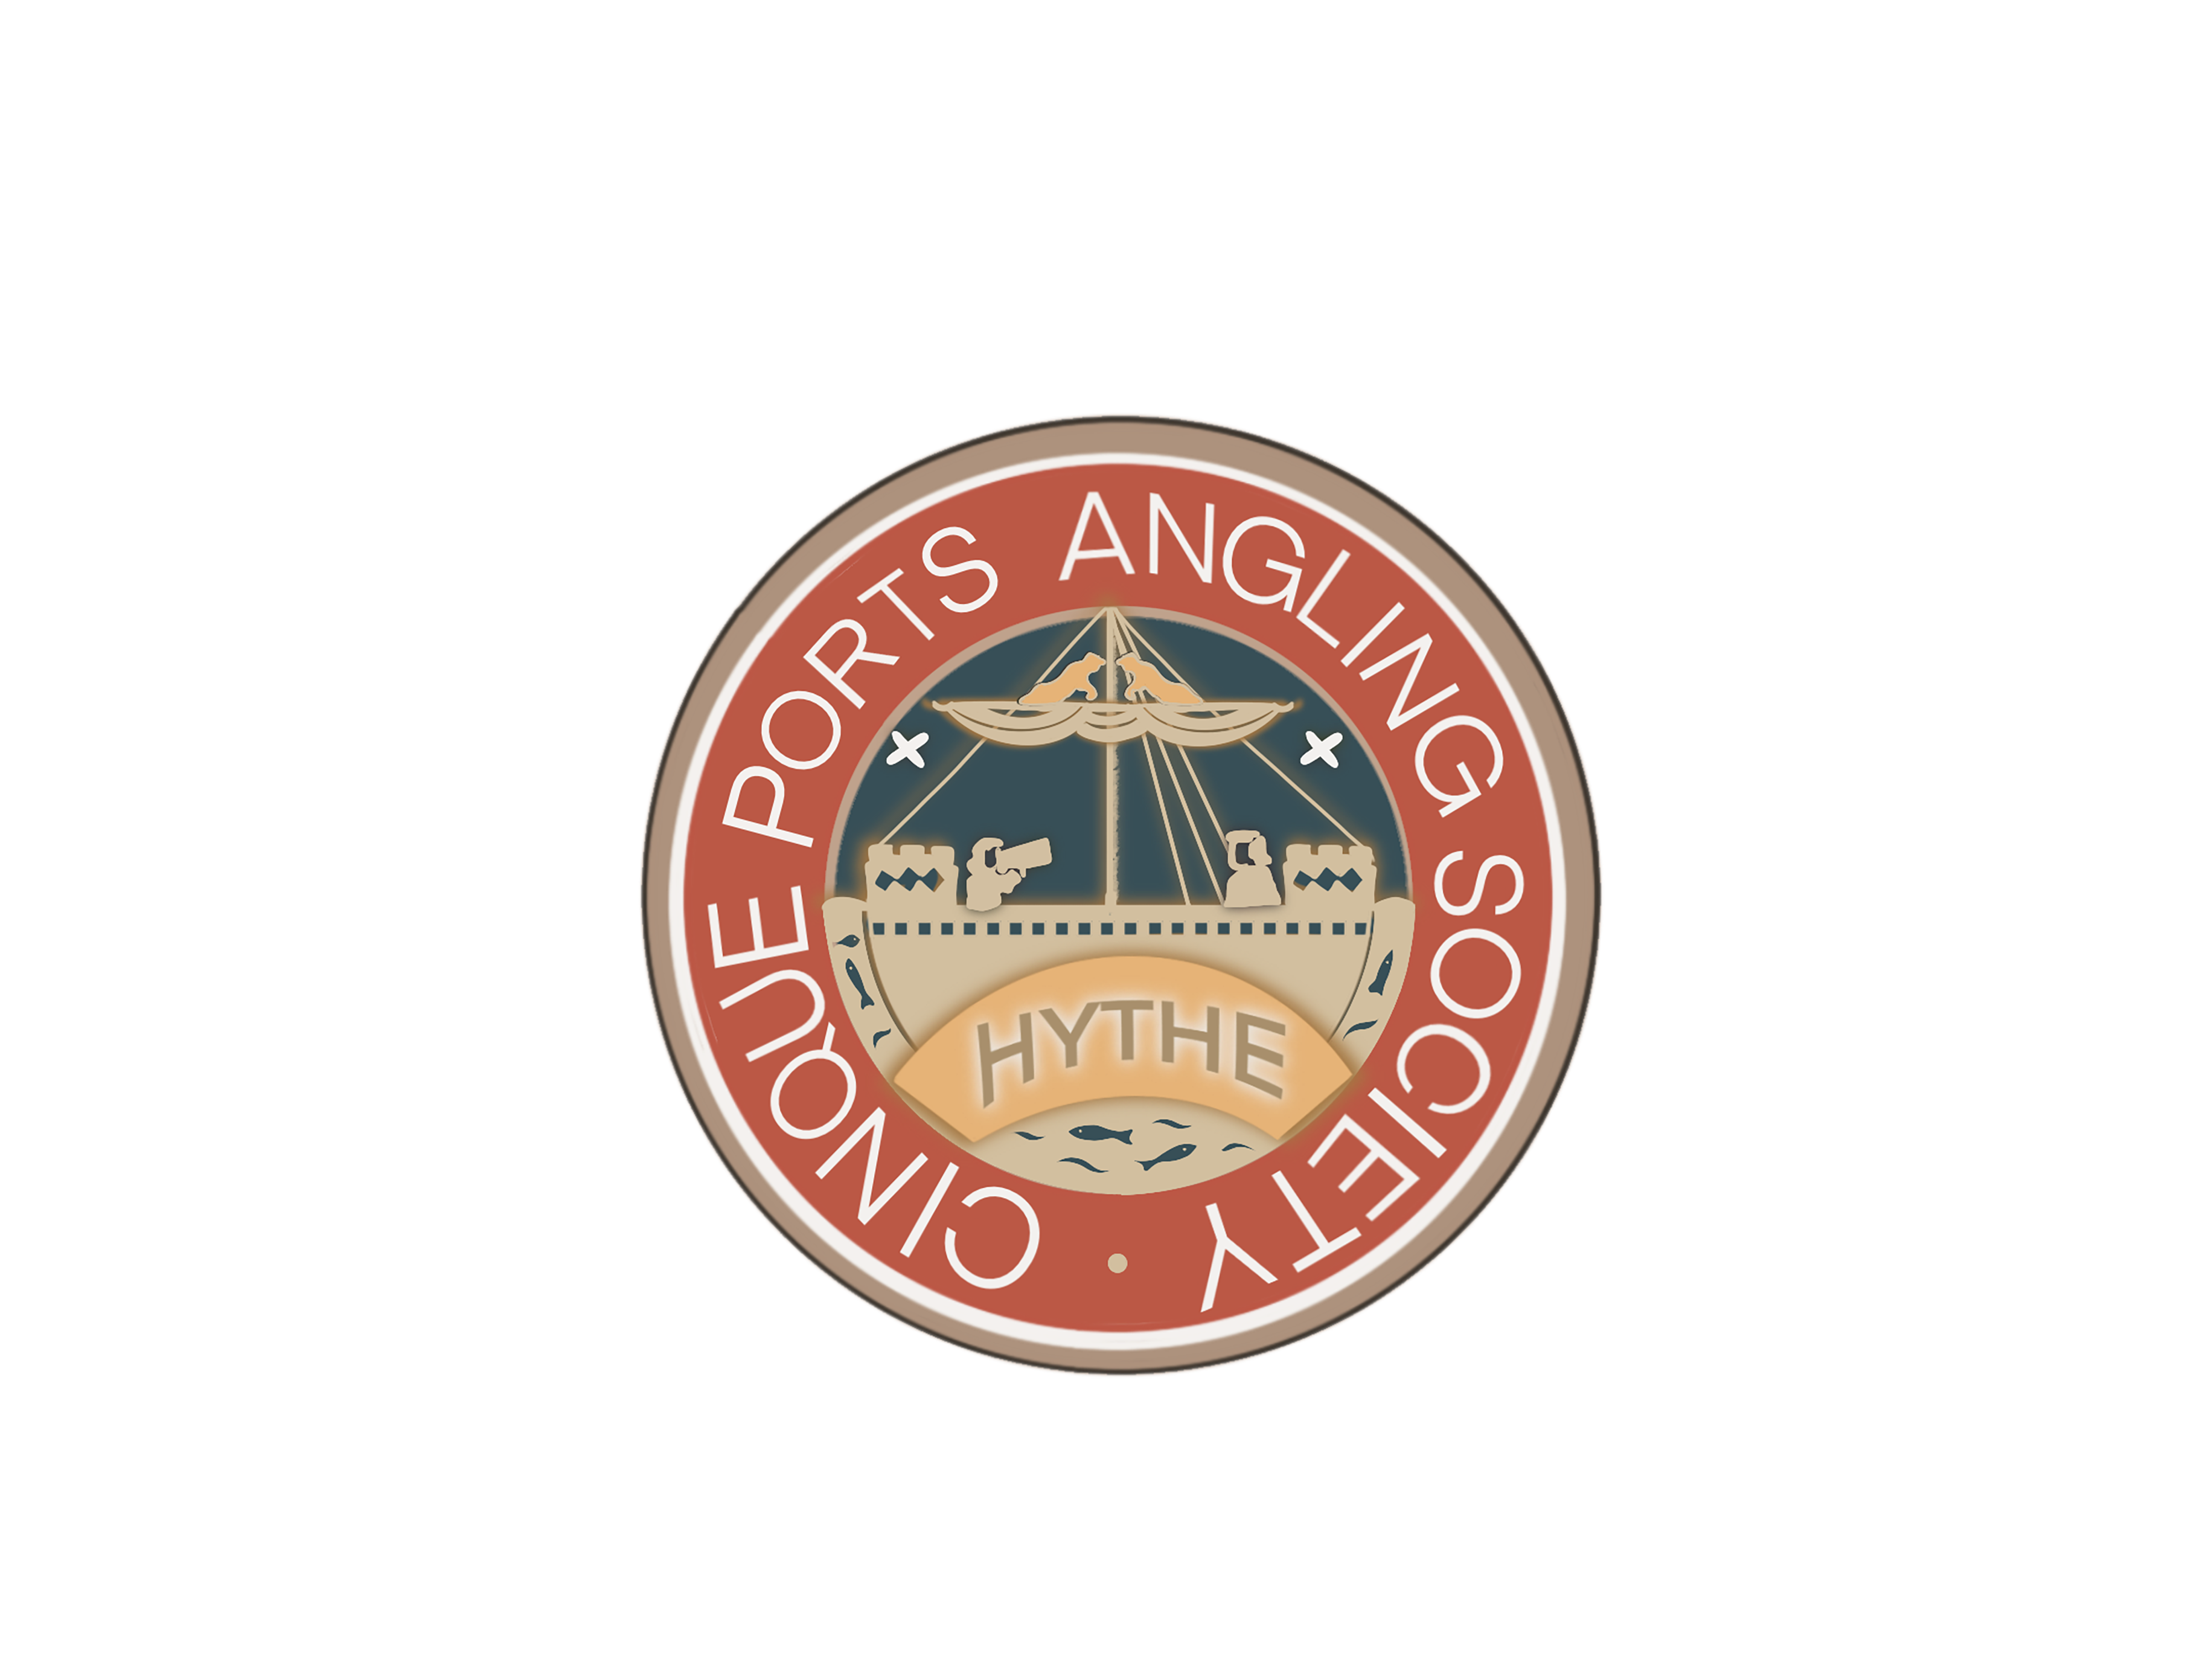 Cinque Ports Angling Society